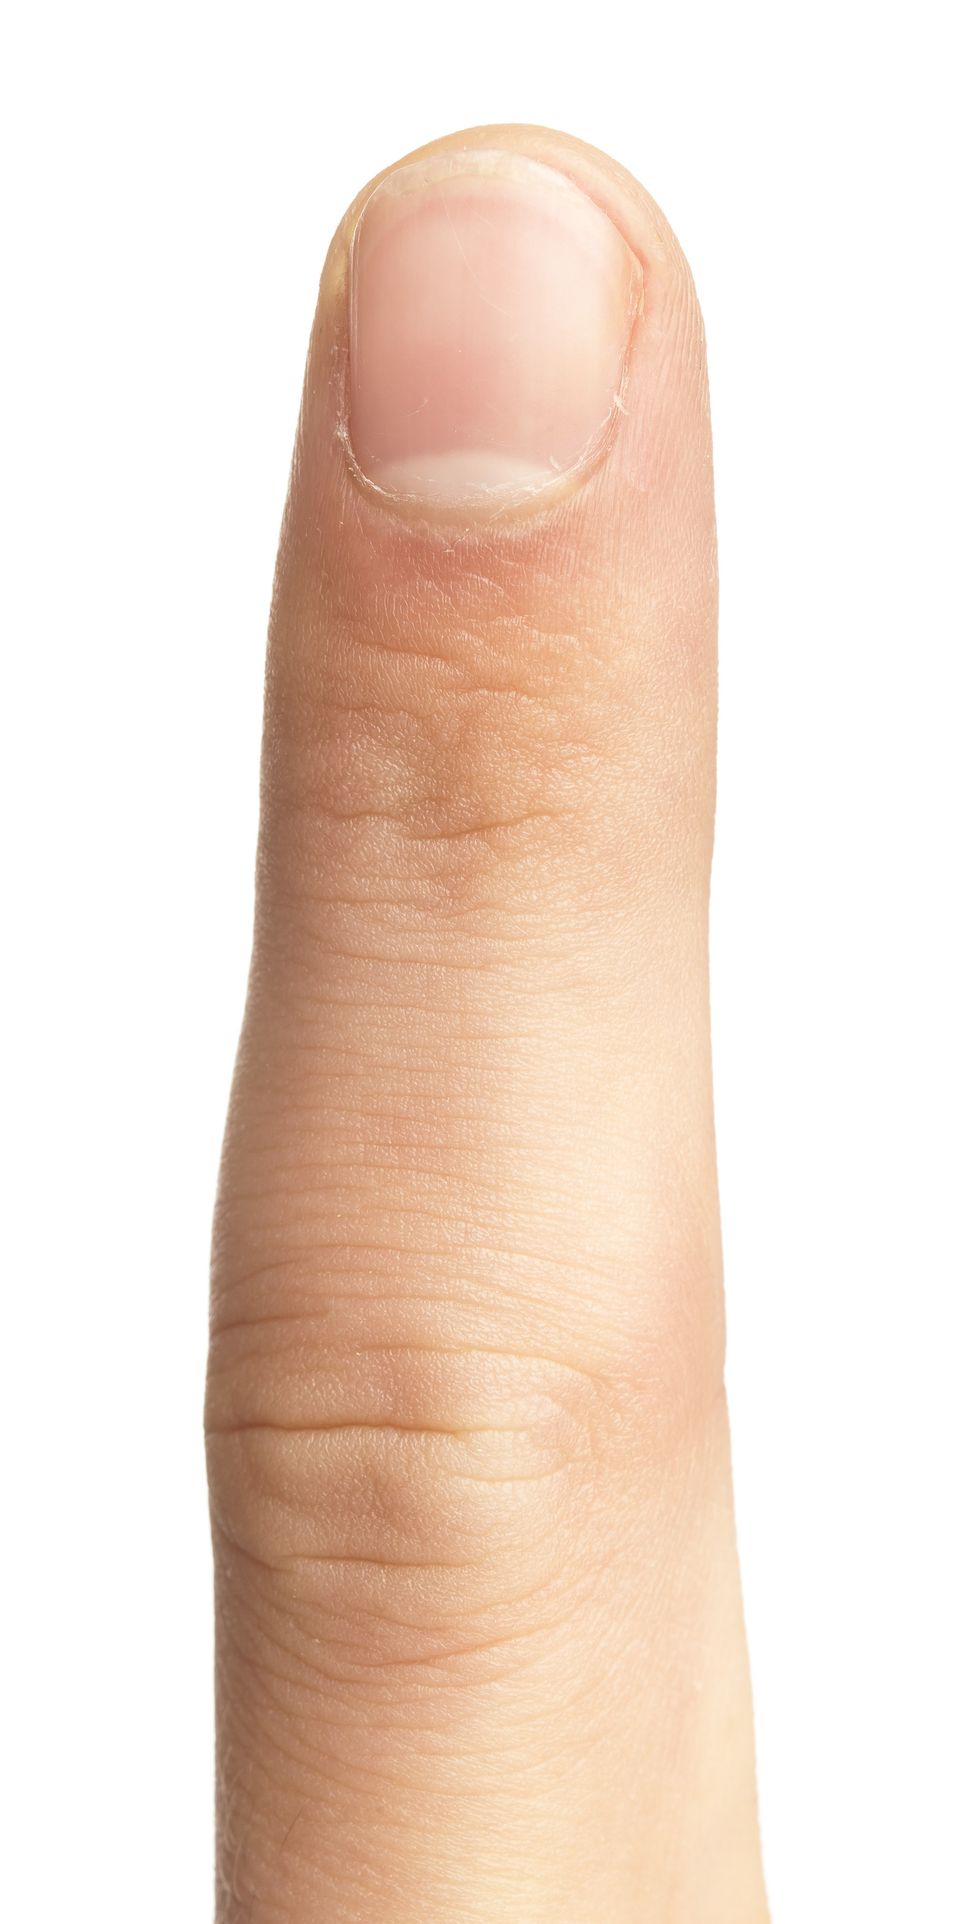 Pale Nails